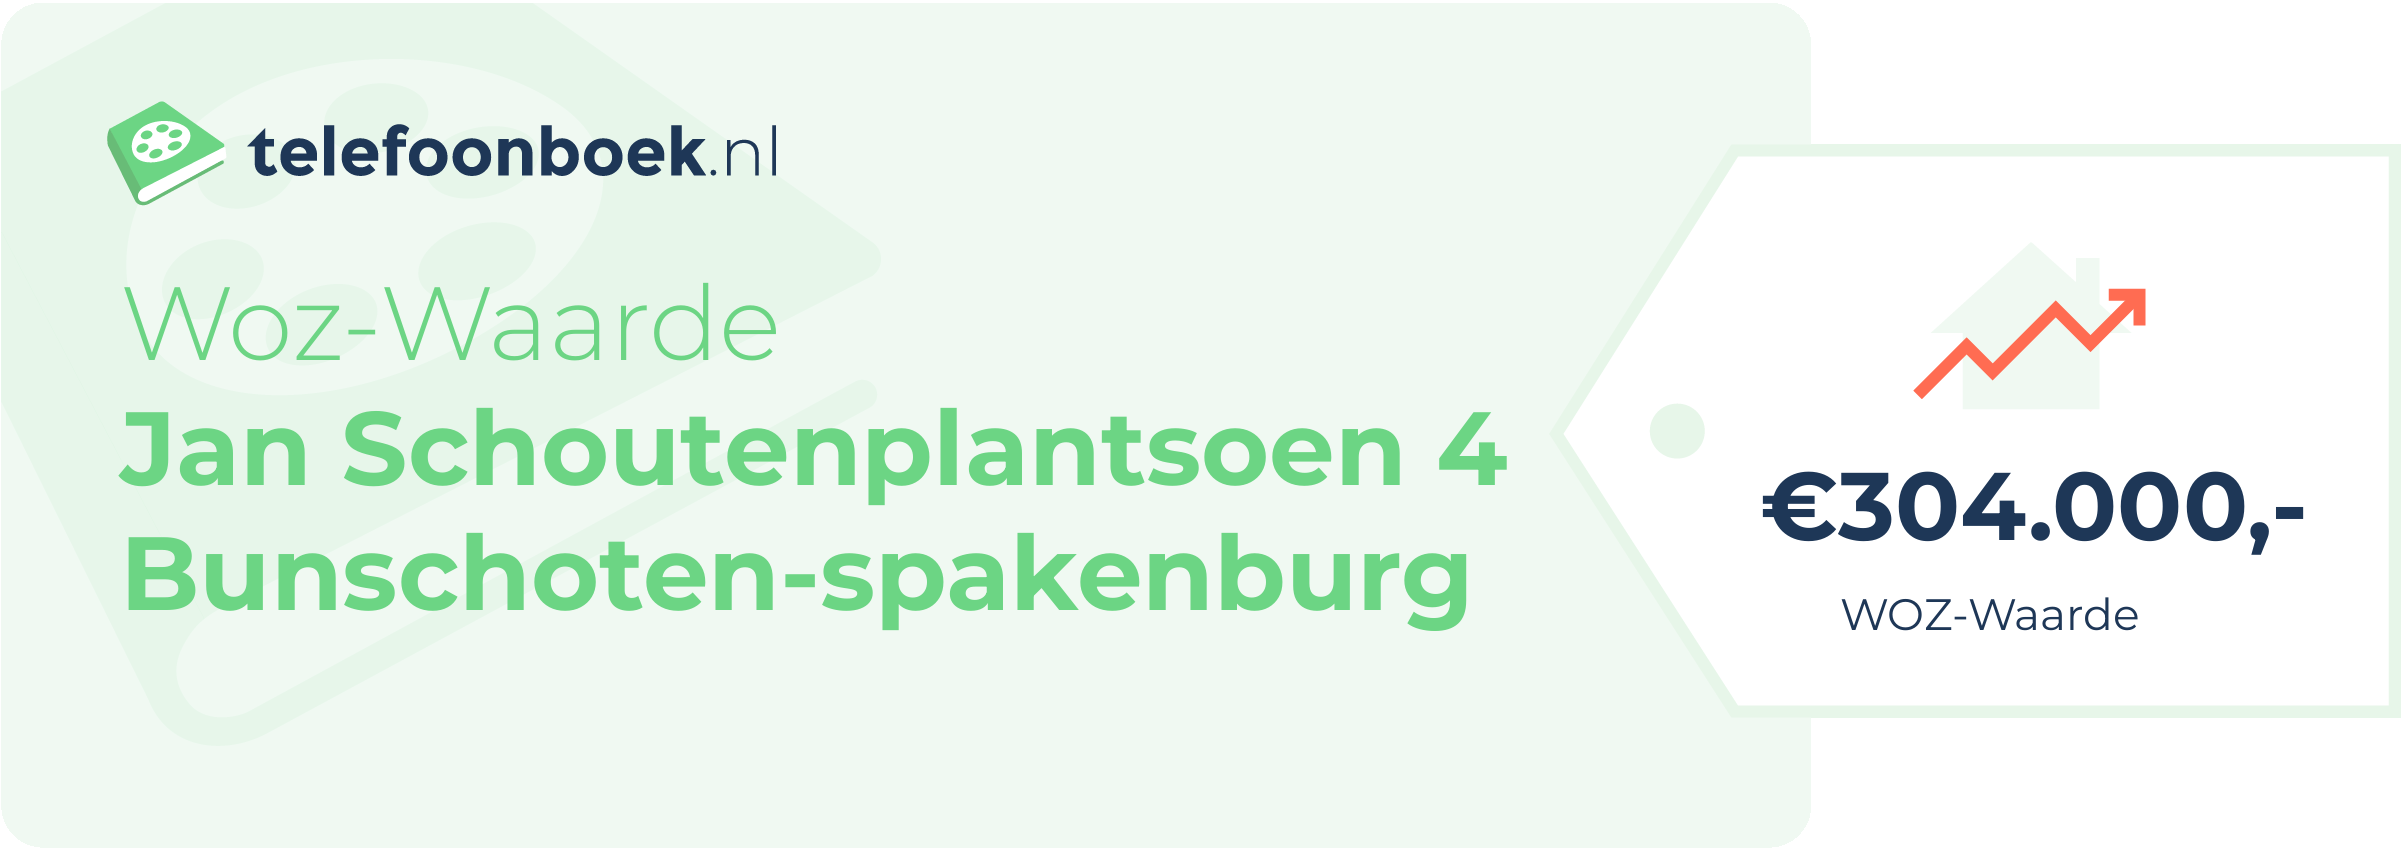 WOZ-waarde Jan Schoutenplantsoen 4 Bunschoten-Spakenburg